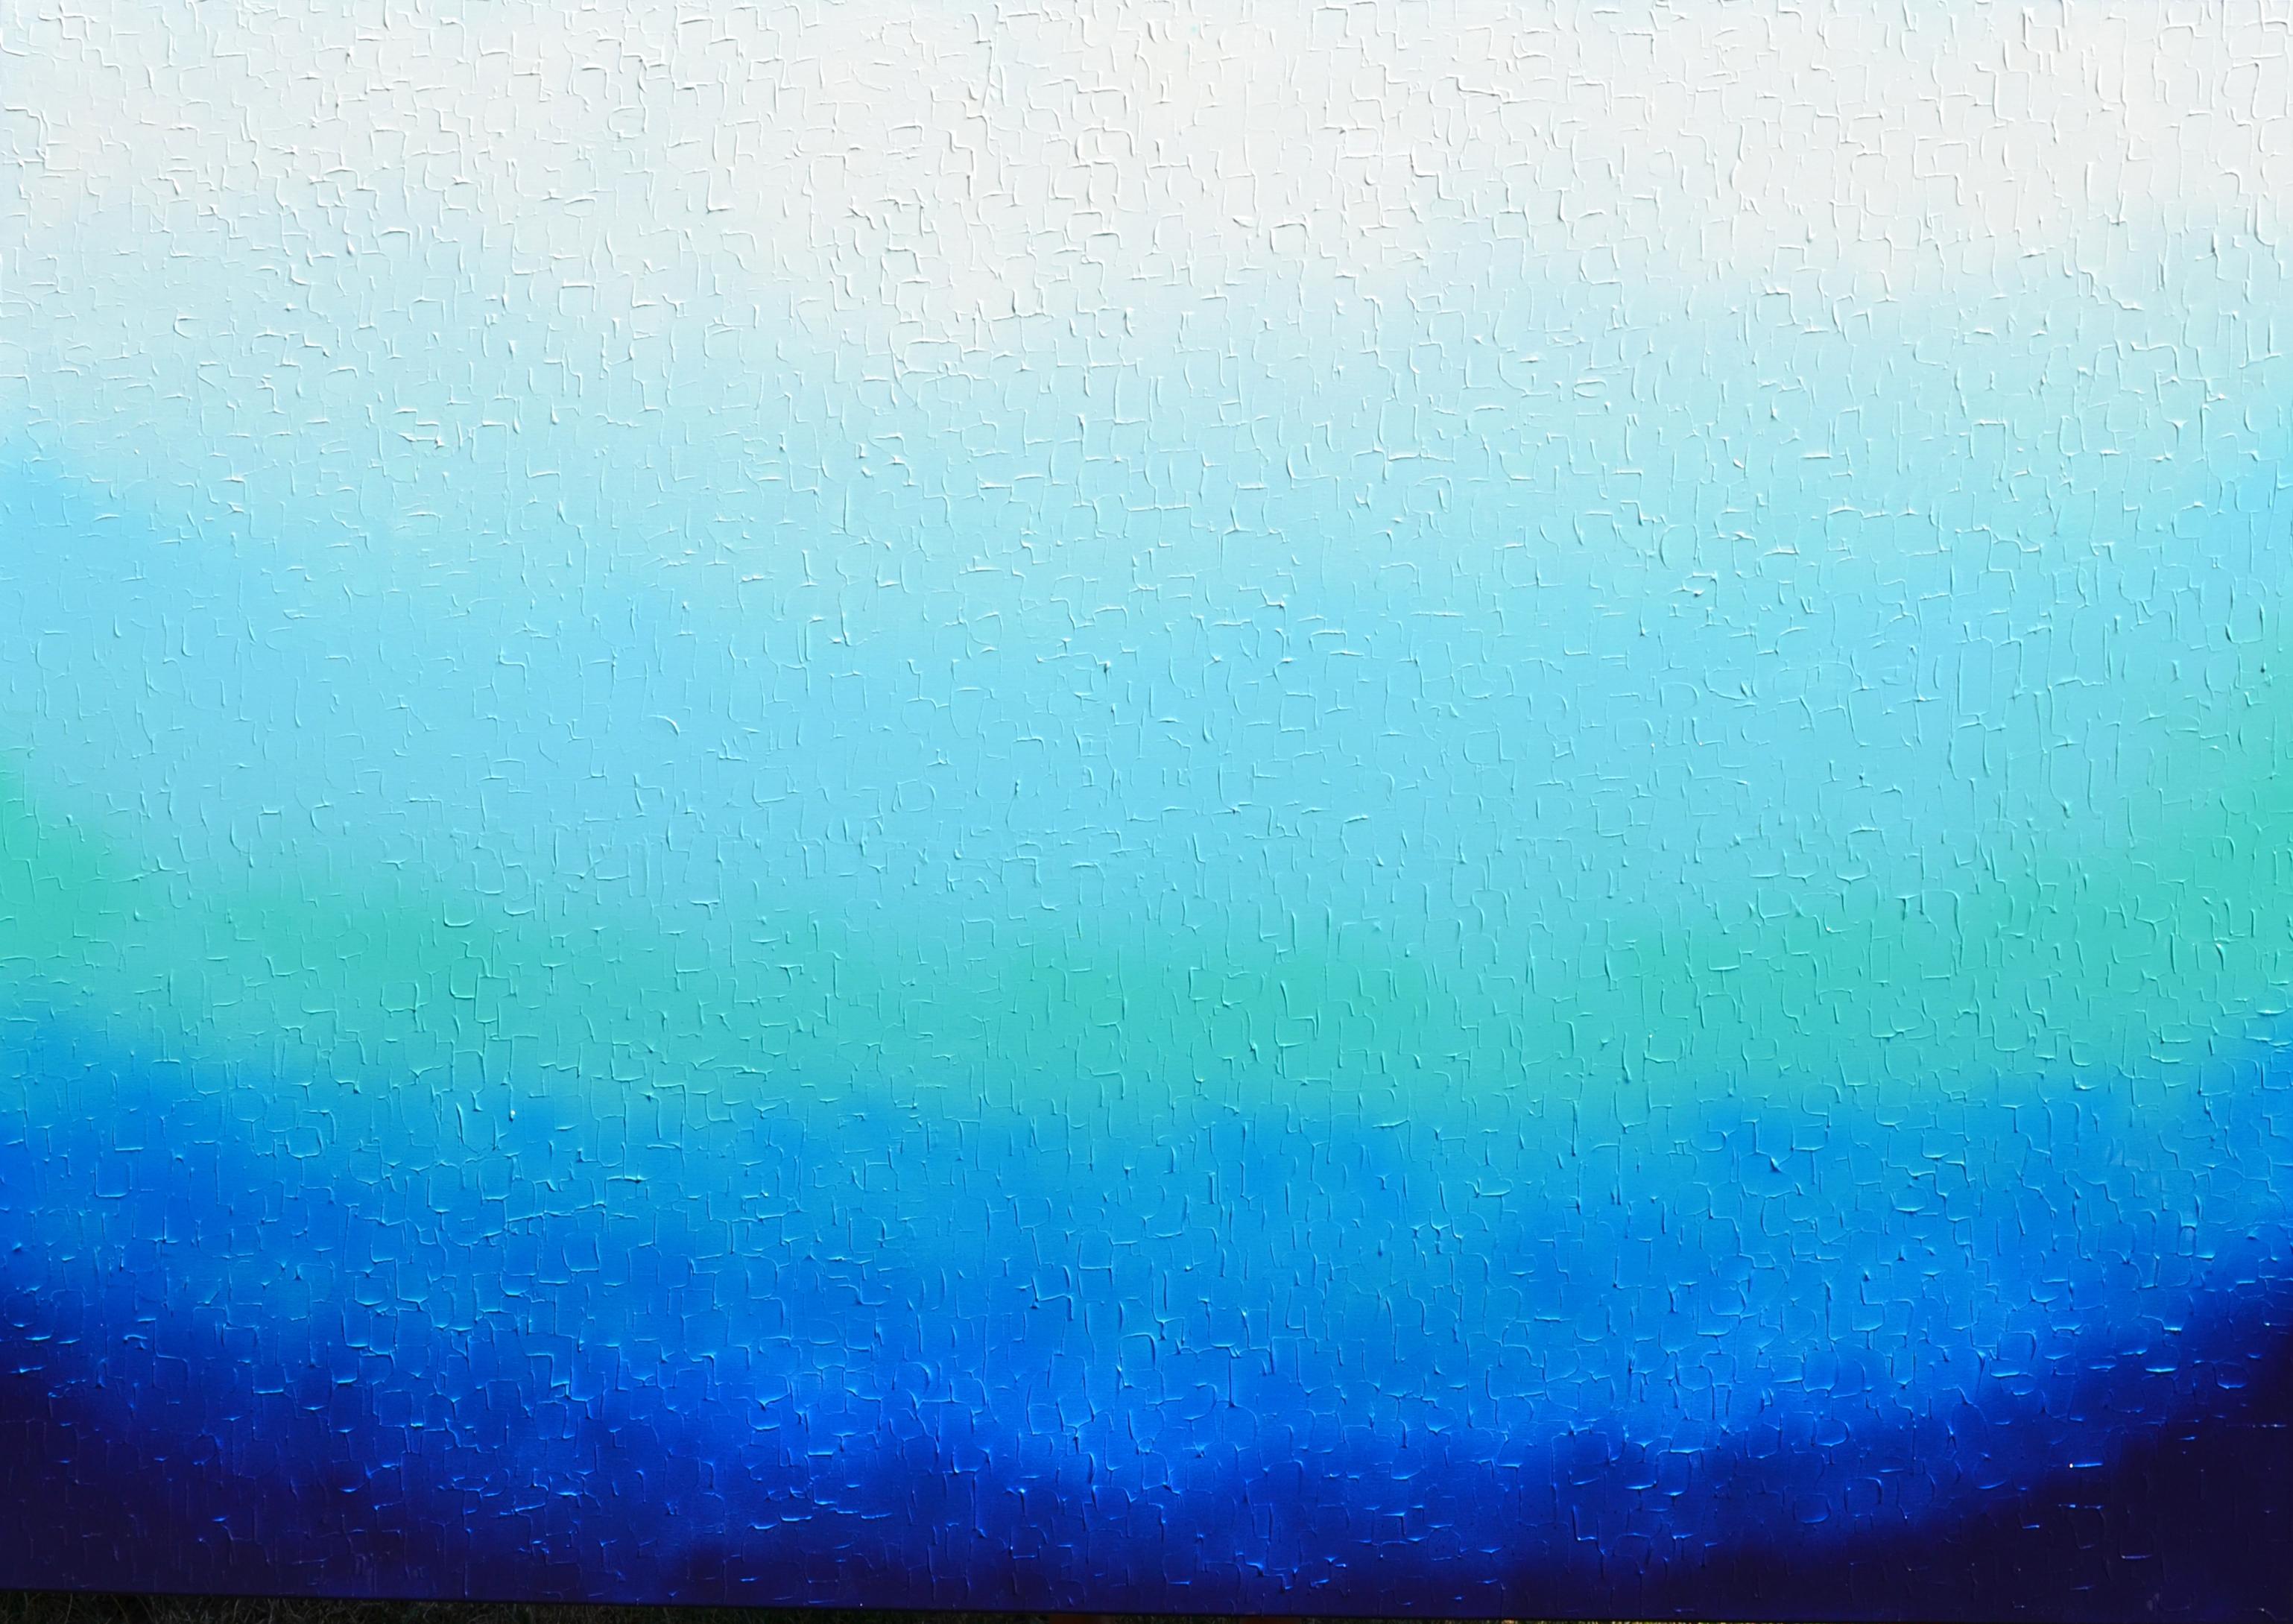 Abstract Painting SOOS TIBERIU - Tranquil XXI - Grand couteau à palette en relief, peinture abstraite dégradée bleue